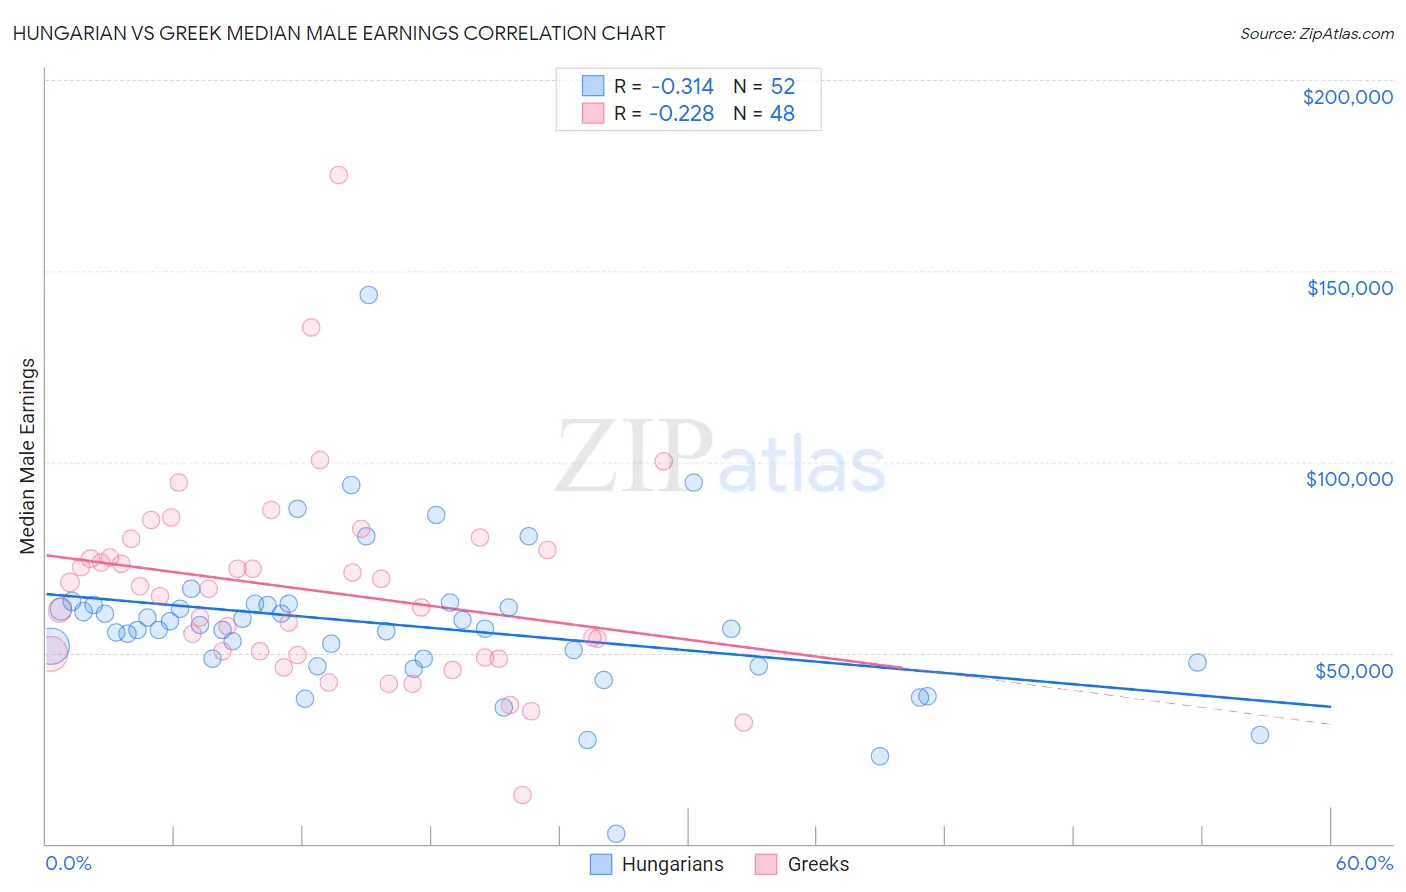 Hungarian vs Greek Median Male Earnings